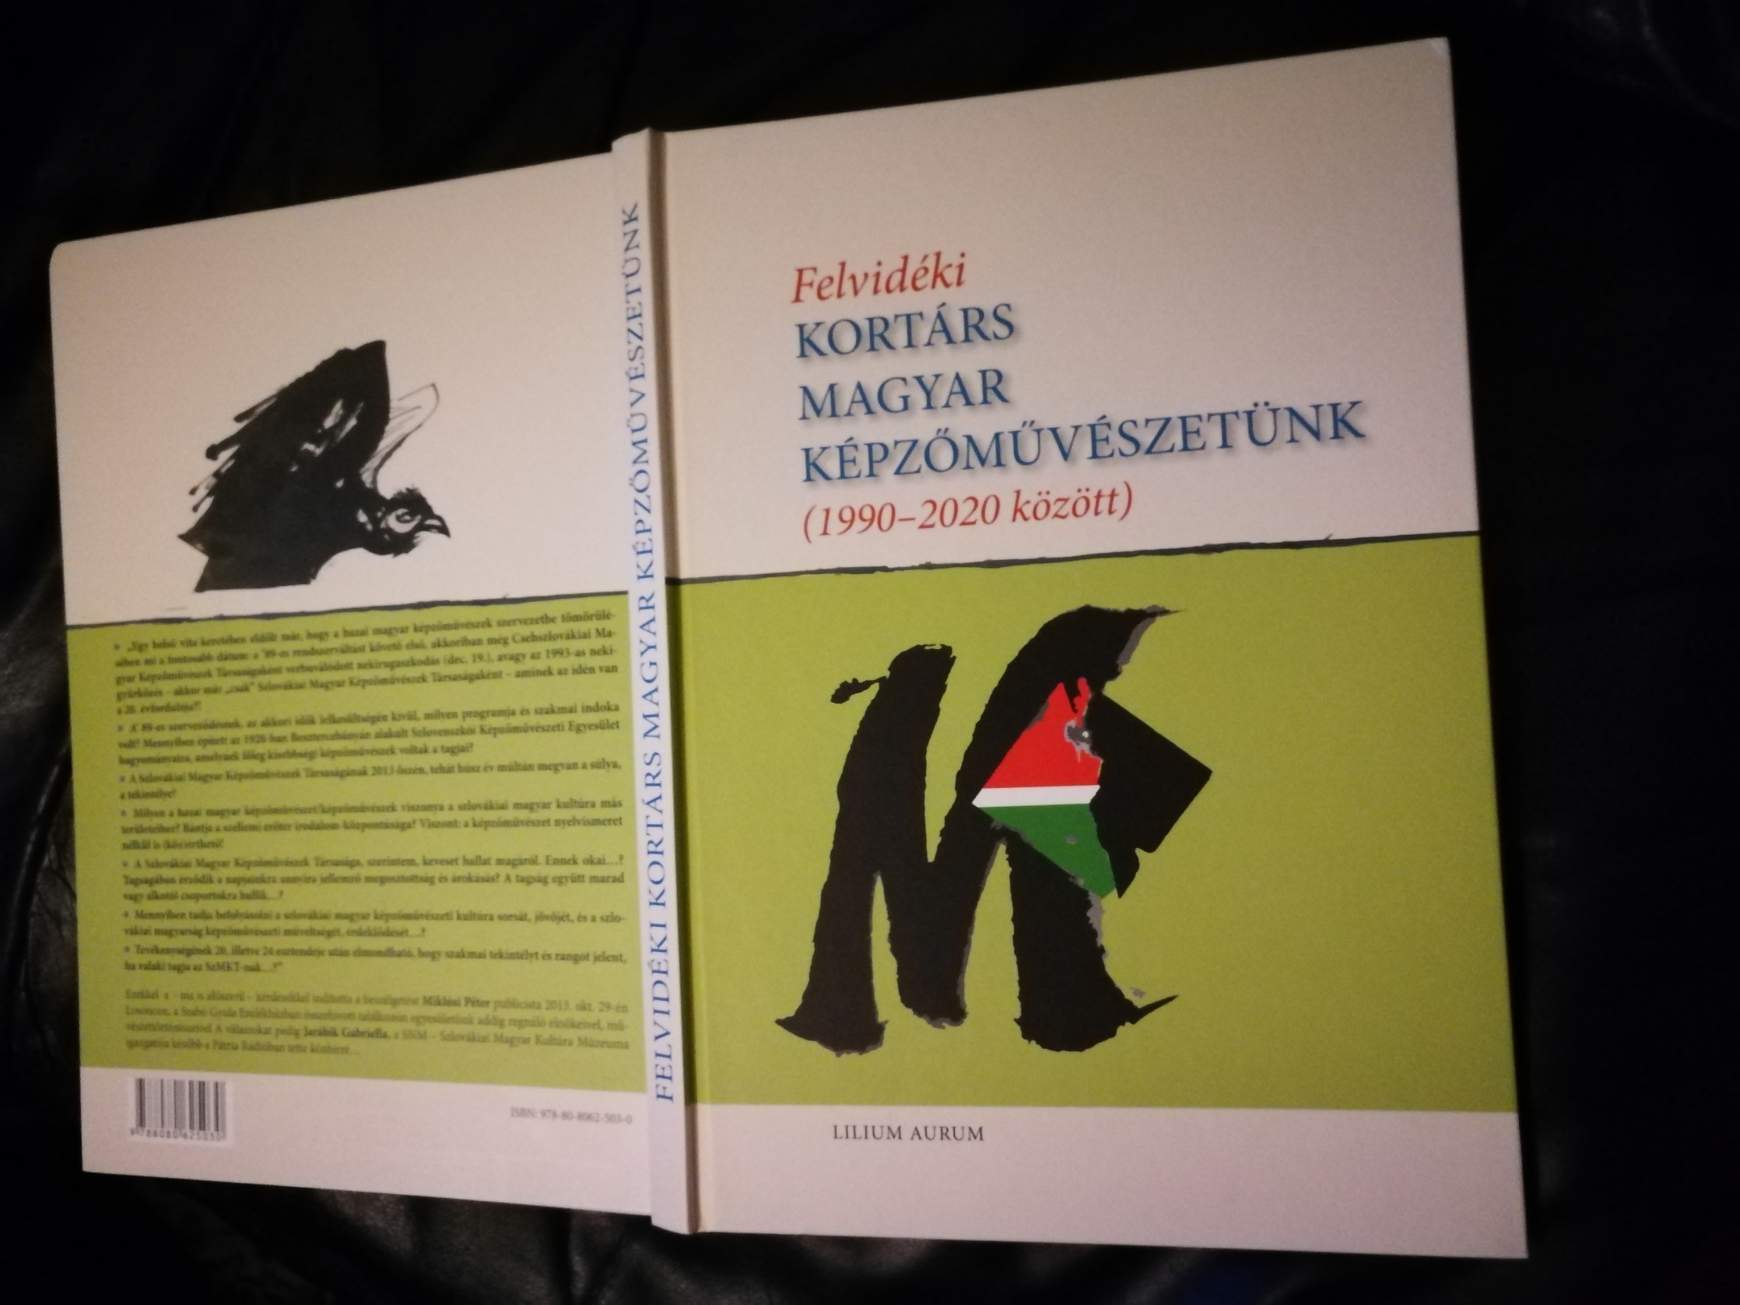 Hiánypótló kiadvány három évtizednyi hazai magyar képzőművészetünkről